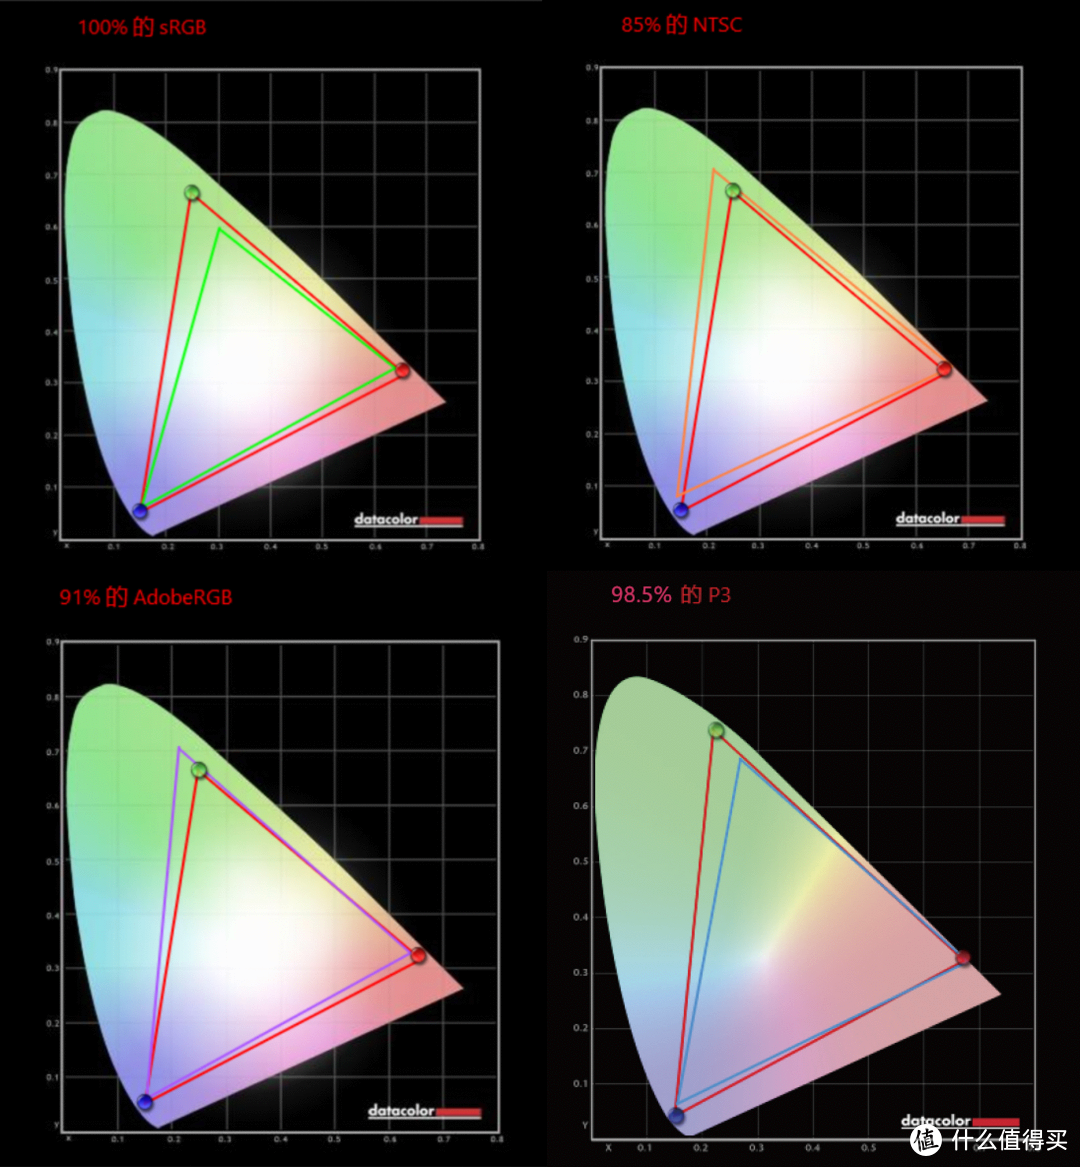 震撼视觉体验，探索显示技术的新境界丨LG UltraGear OLED 32GS95UE显示器深度测评